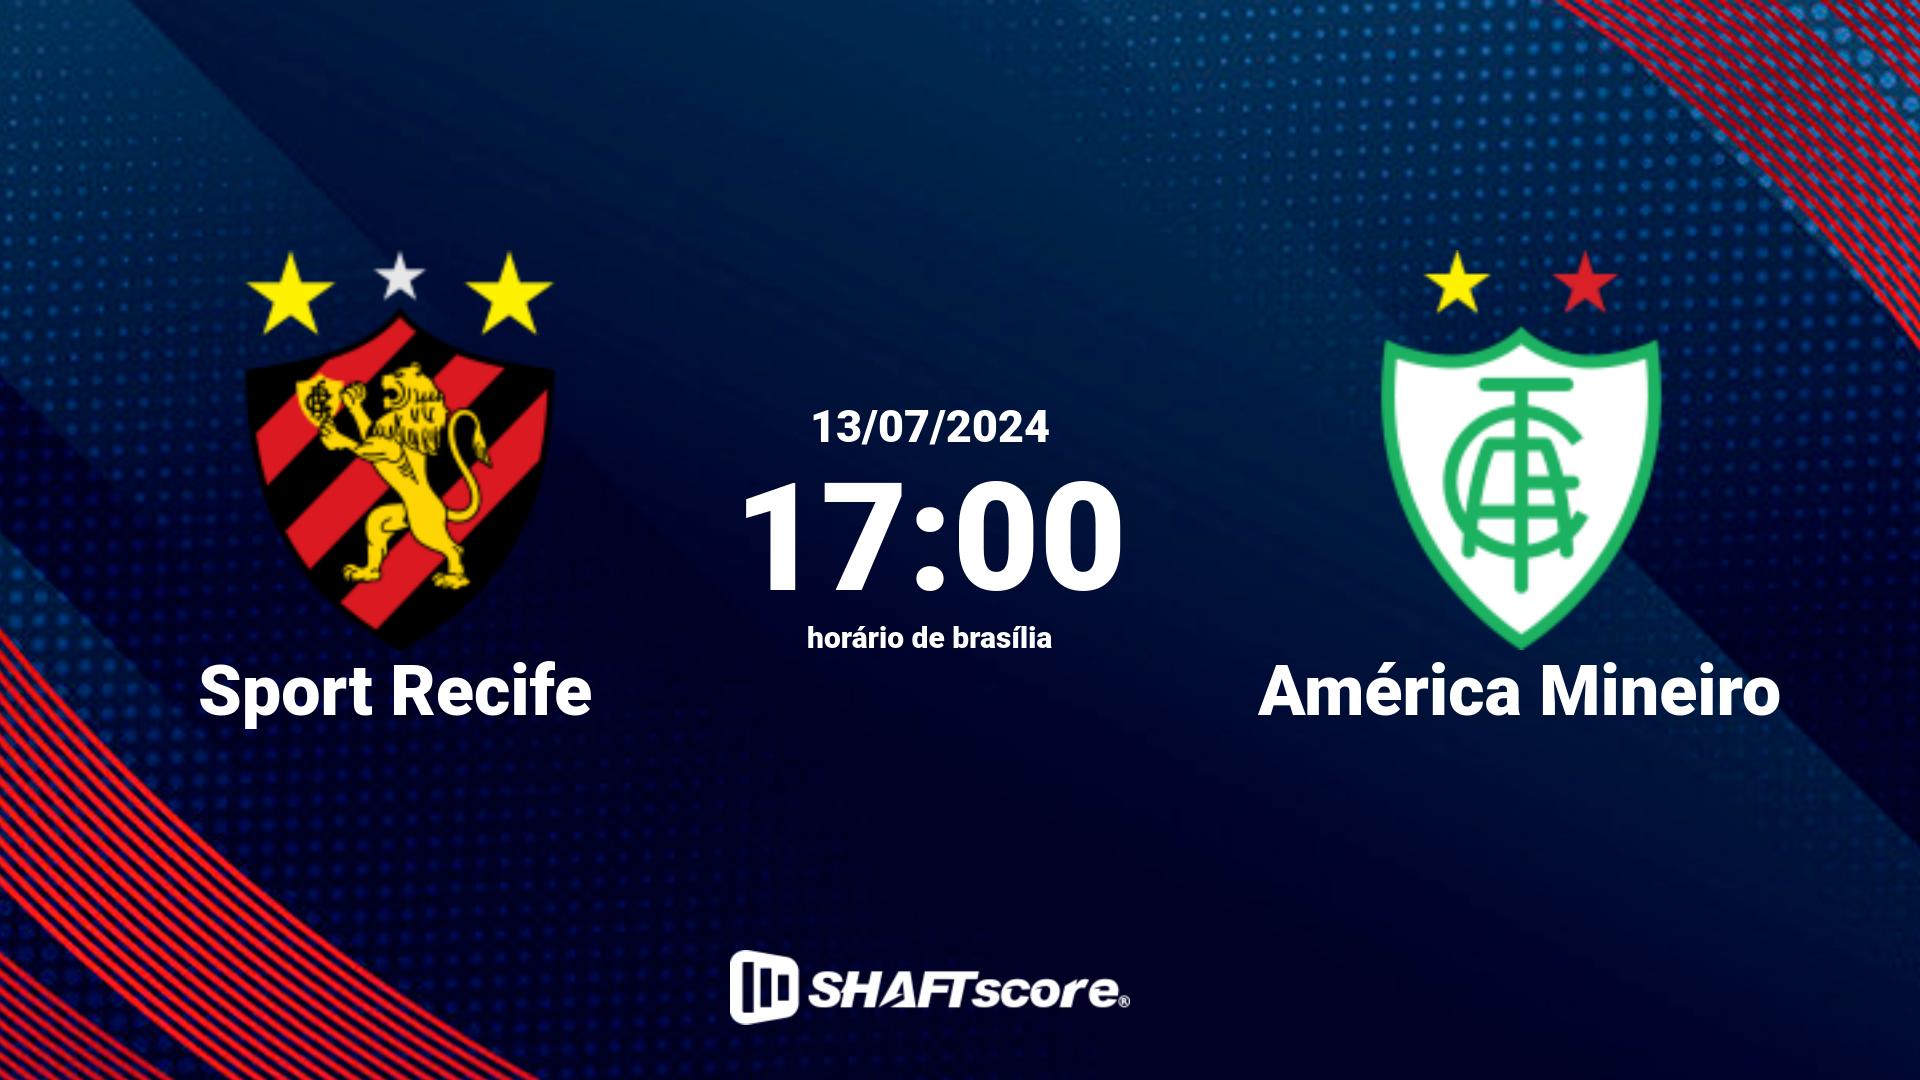 Estatísticas do jogo Sport Recife vs América Mineiro 13.07 17:00